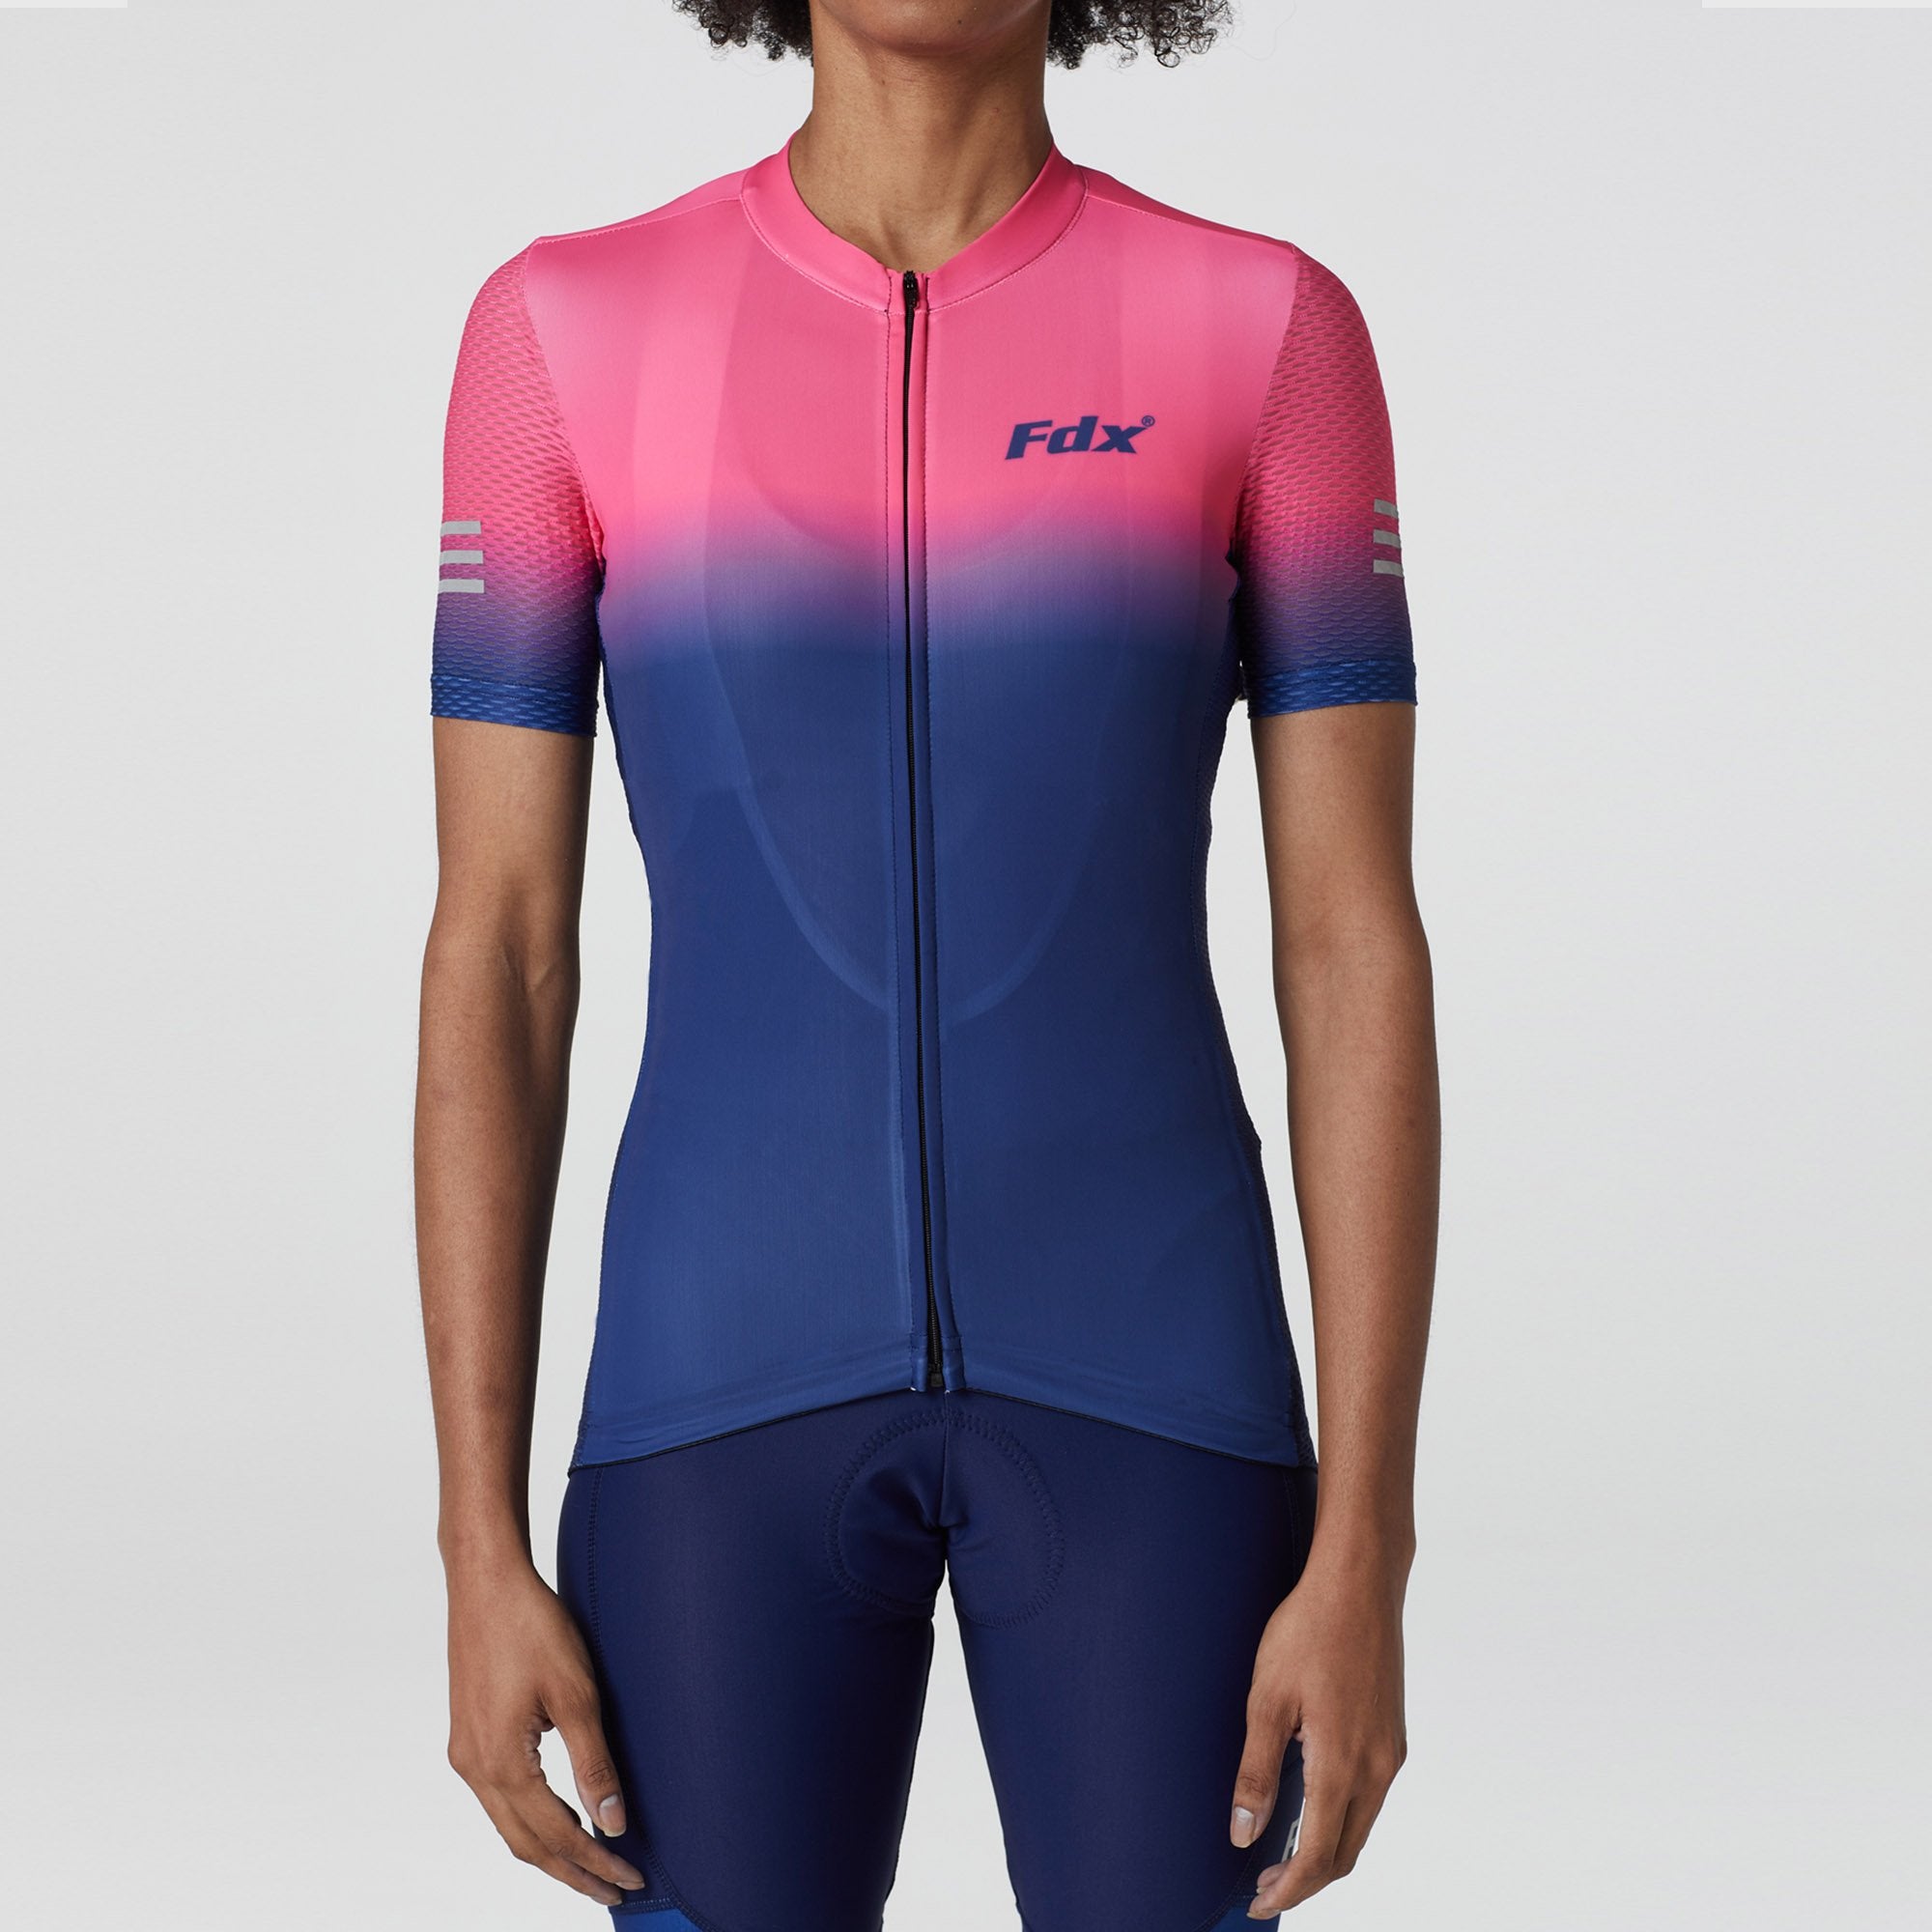 Fdx Women's Blue & Pink Short Sleeve Cycling Jersey for Summer Best Road Bike Wear Top Light Weight, Full Zipper, Pockets & Hi-viz Reflectors - Duo